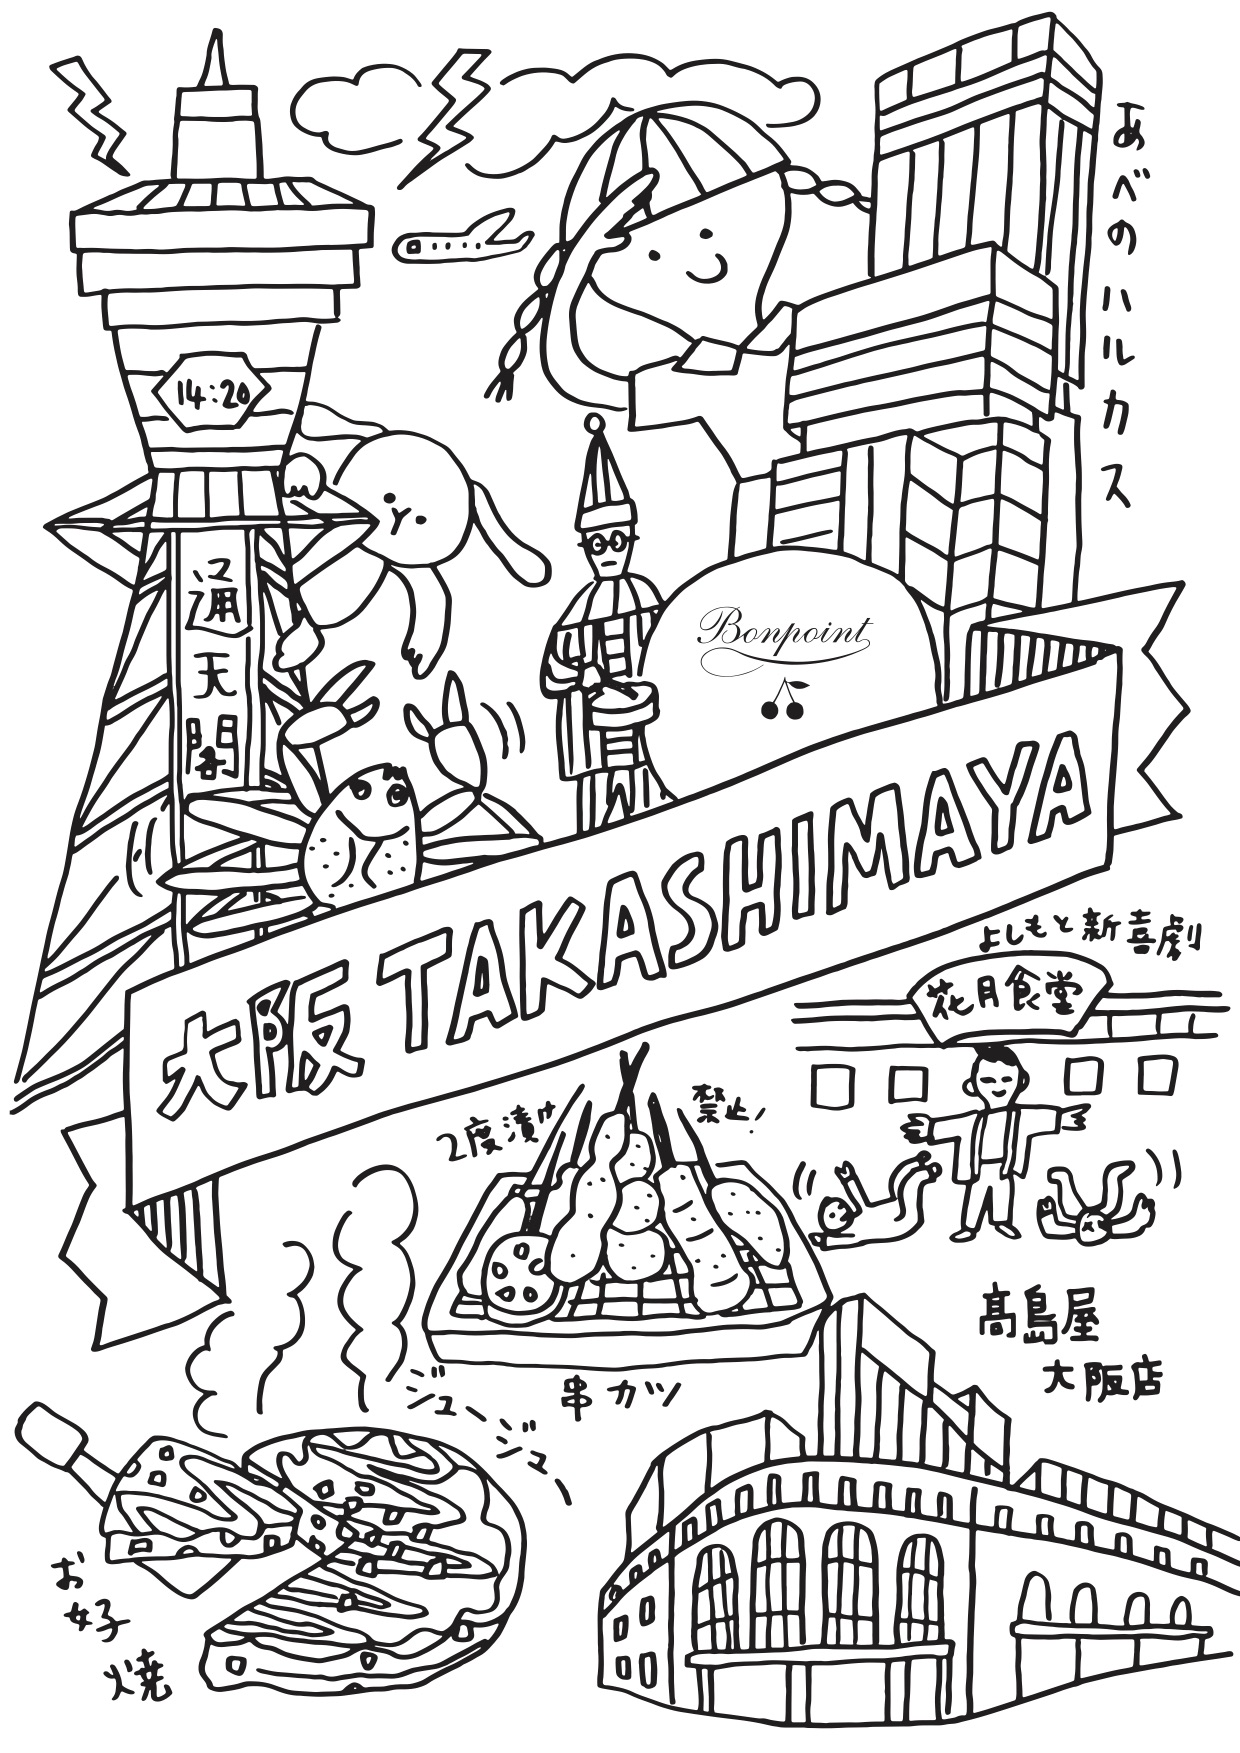 Osaka_Takashimaya